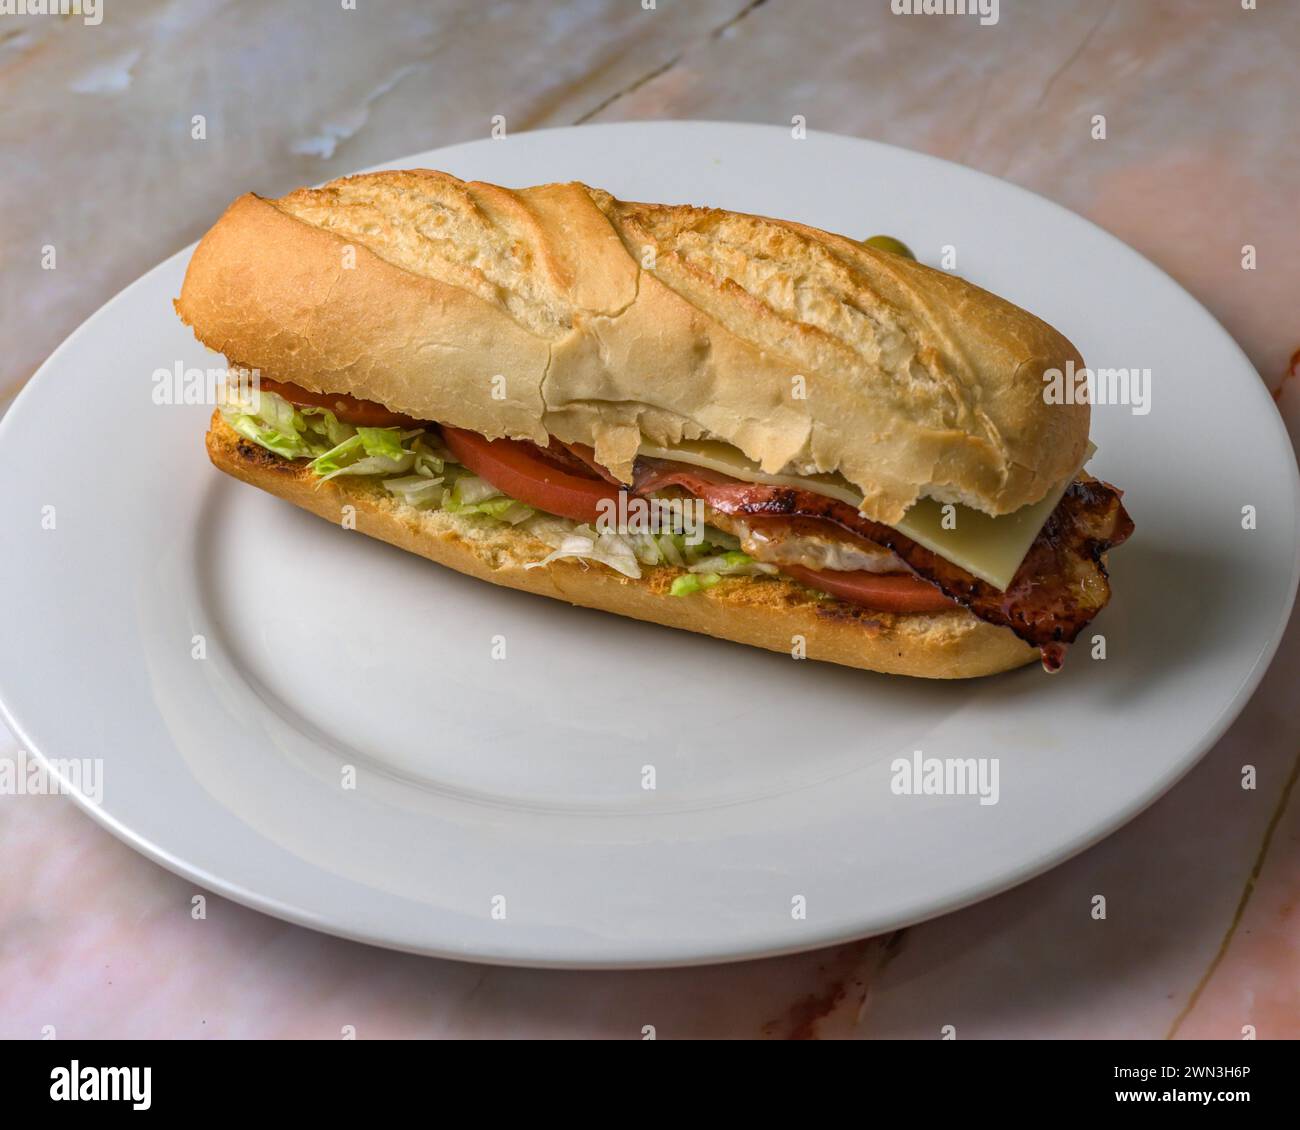 Délicieux sandwich au bacon et au fromage typiquement espagnol avec laitue et tomate, majorque, îles baléares, espagne Banque D'Images